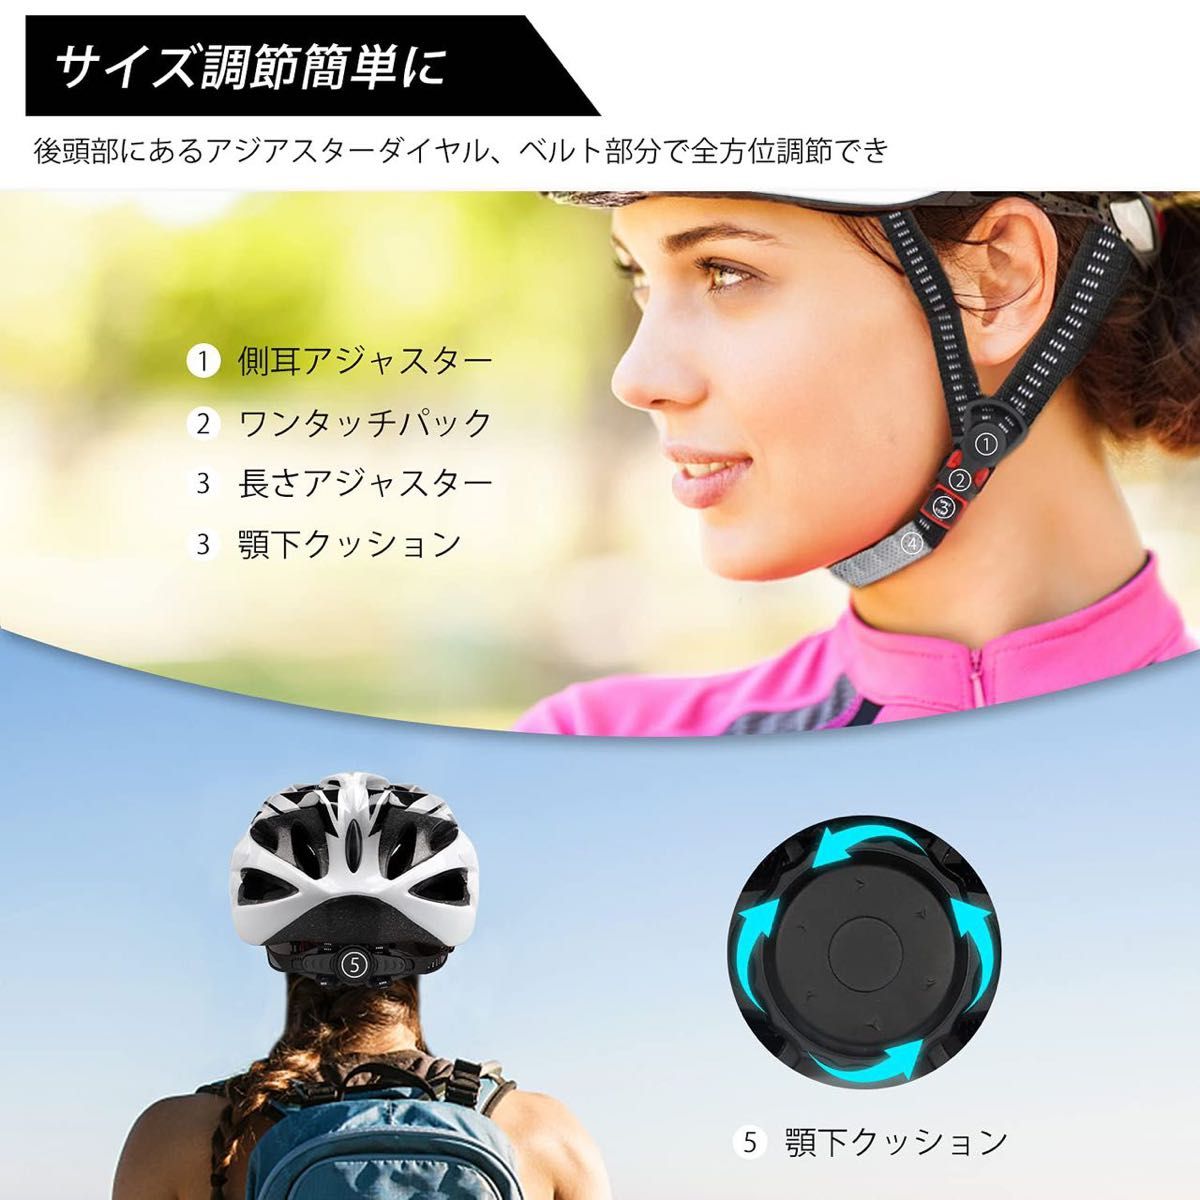 新品 ヘルメット 自転車用 大人用 高通気性 通学通勤 男女兼用 54-62cm ブラックxホワイト